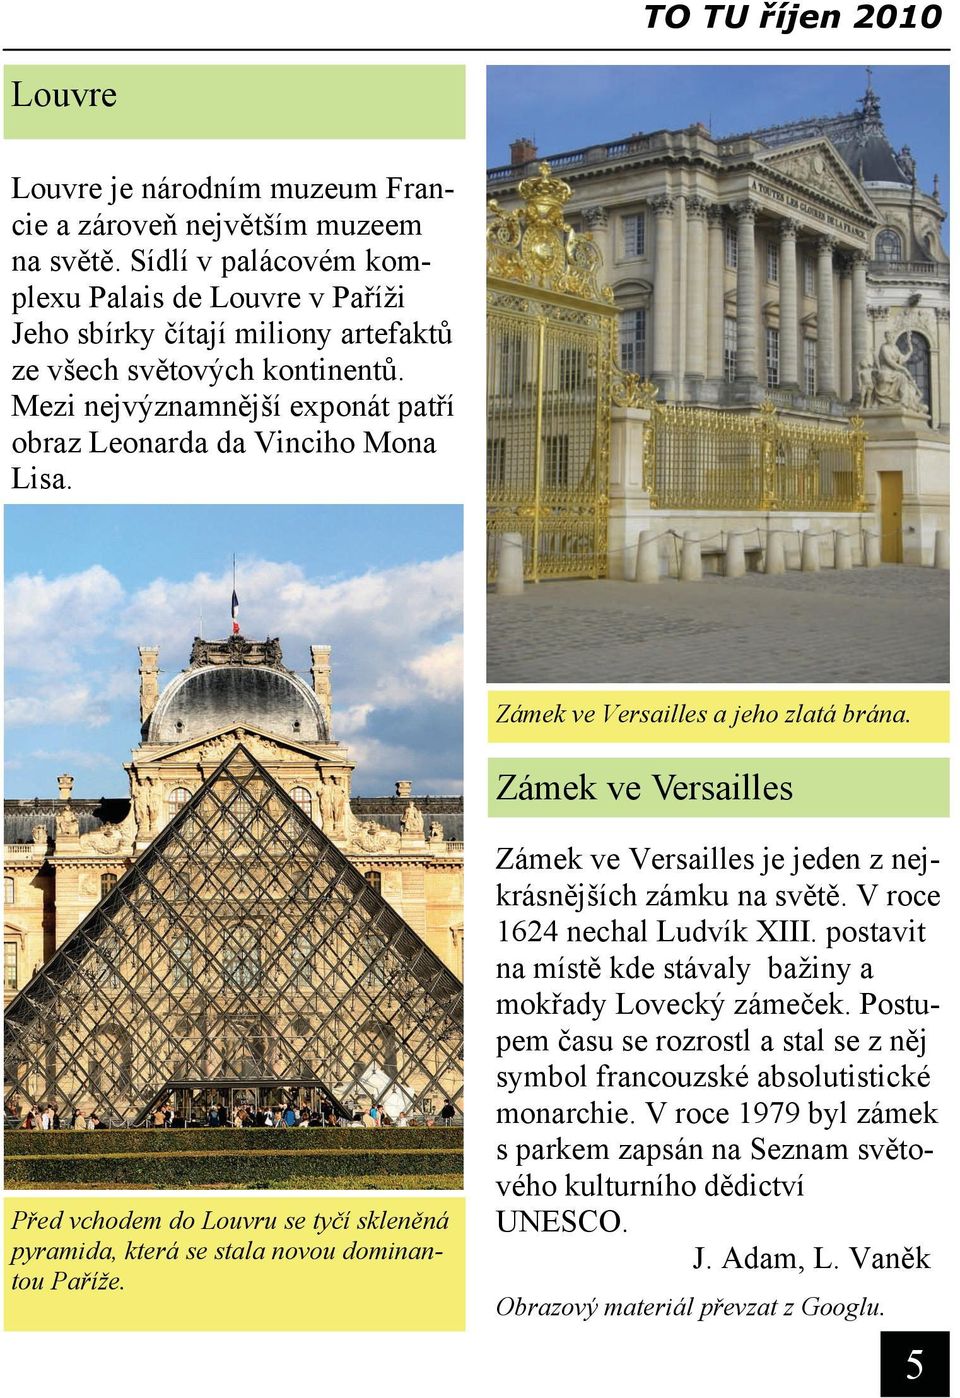 Zámek ve Versailles a jeho zlatá brána. Zámek ve Versailles Před vchodem do Louvru se tyčí skleněná pyramida, která se stala novou dominantou Paříže.